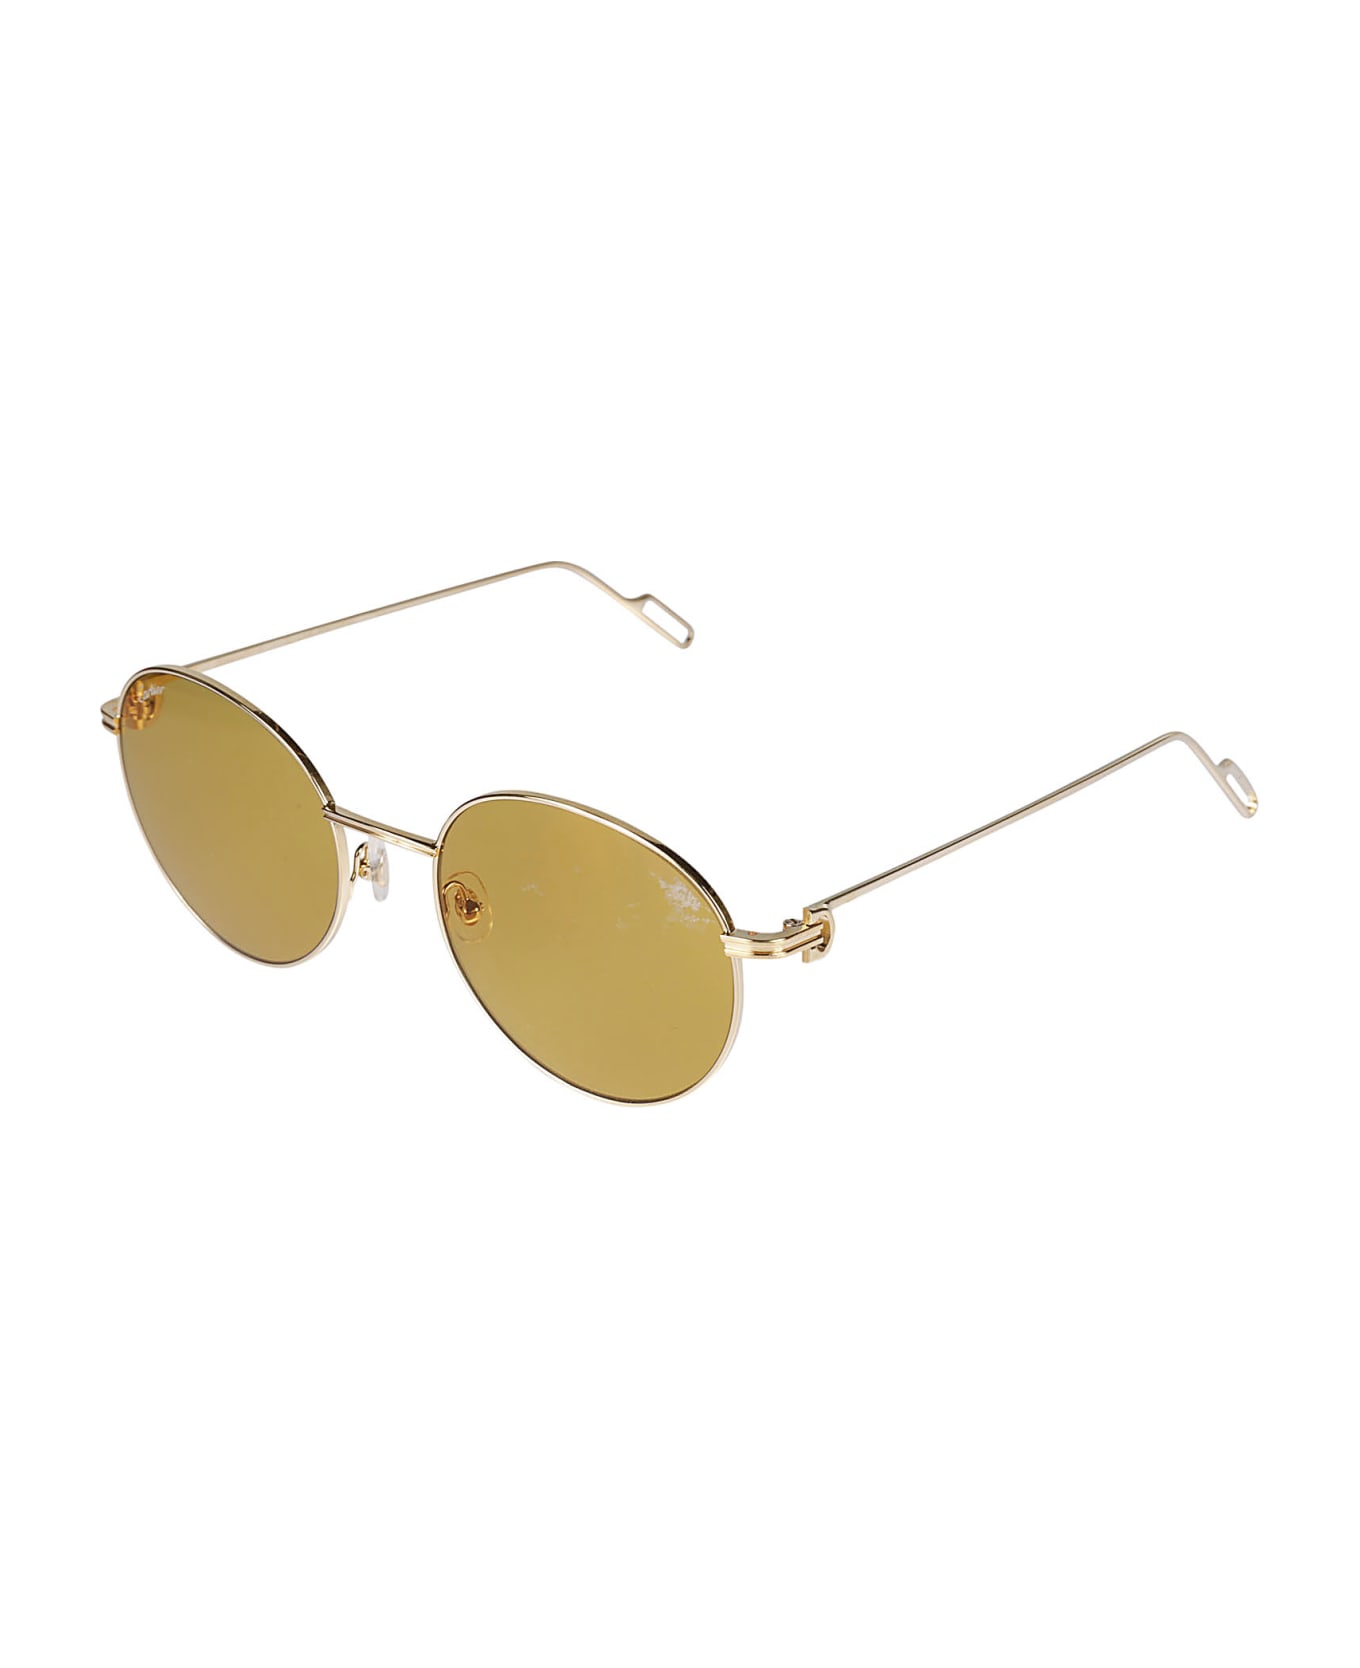 Cartier Eyewear Round Frame Sunglasses pilot - Gold